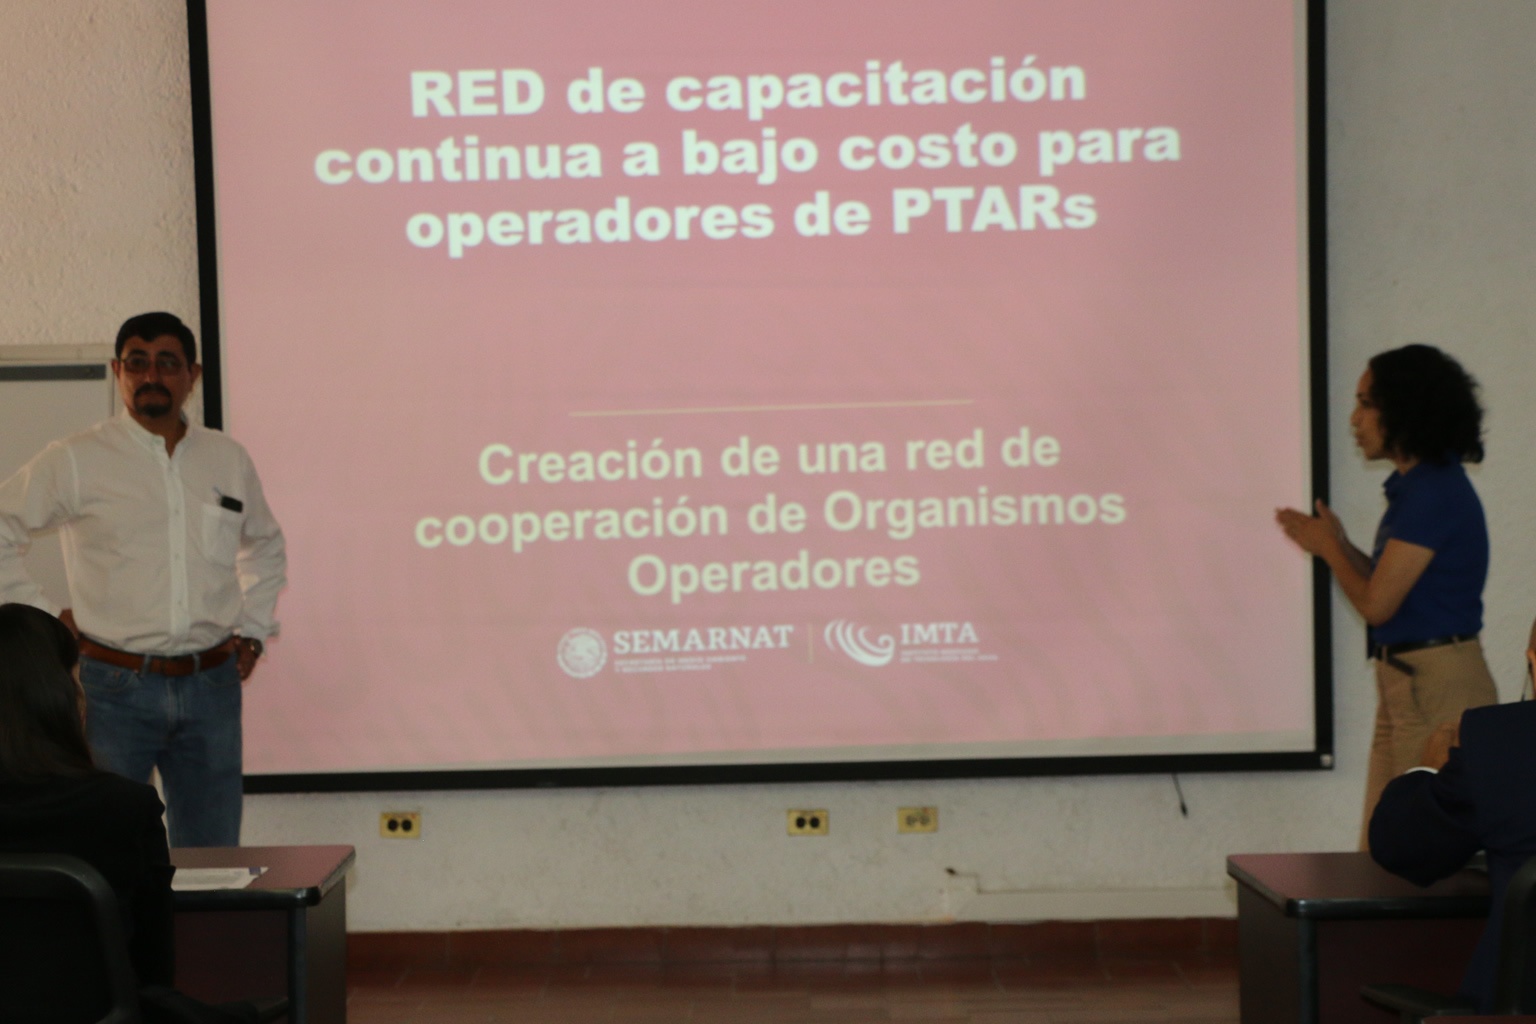 Red de cooperación de Organismos Operadores PTARs